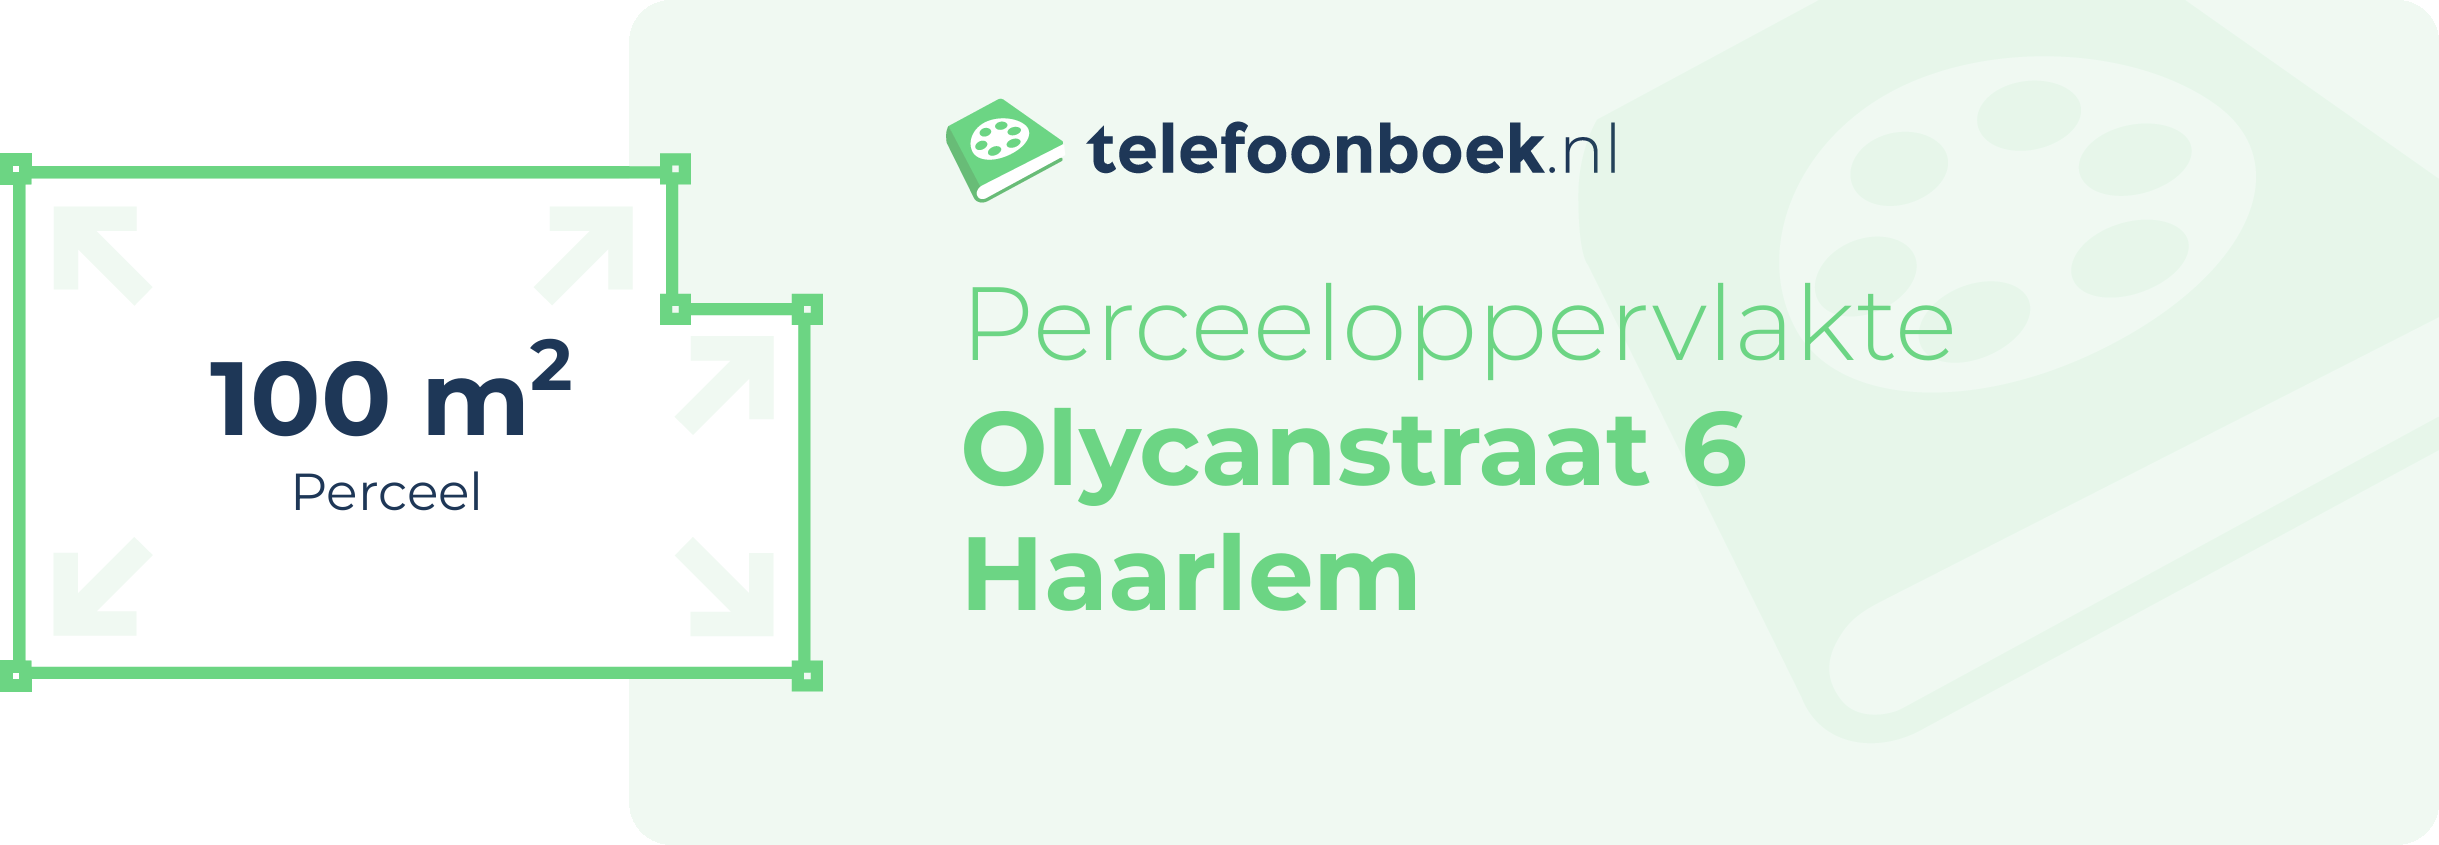 Perceeloppervlakte Olycanstraat 6 Haarlem